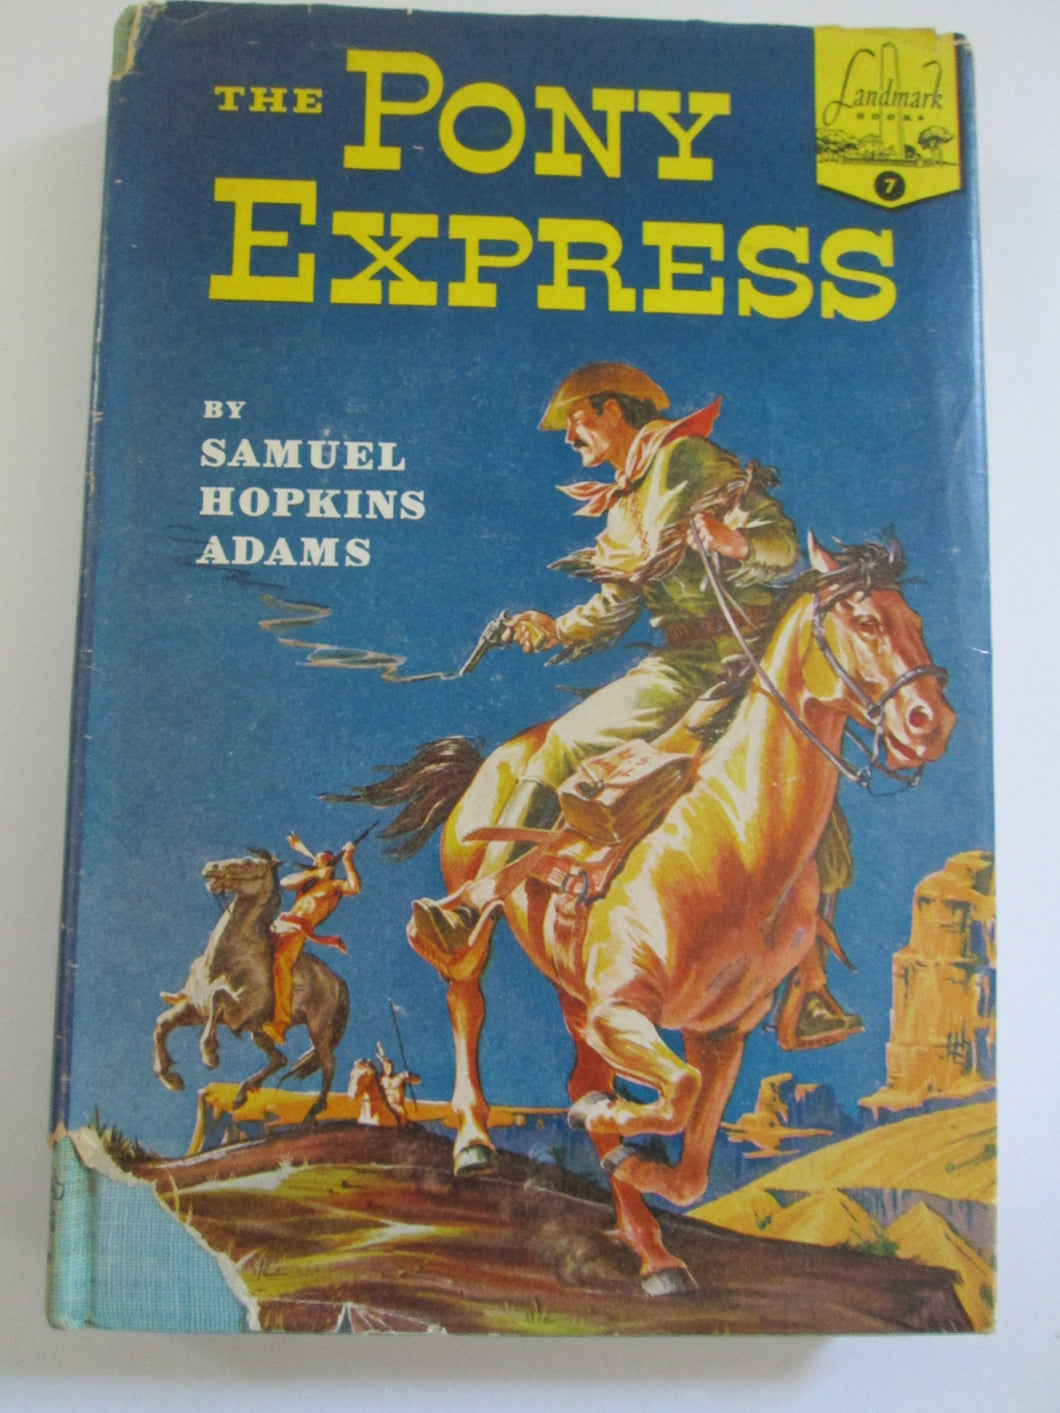 Pony Express by Samuel Adams HC 1950